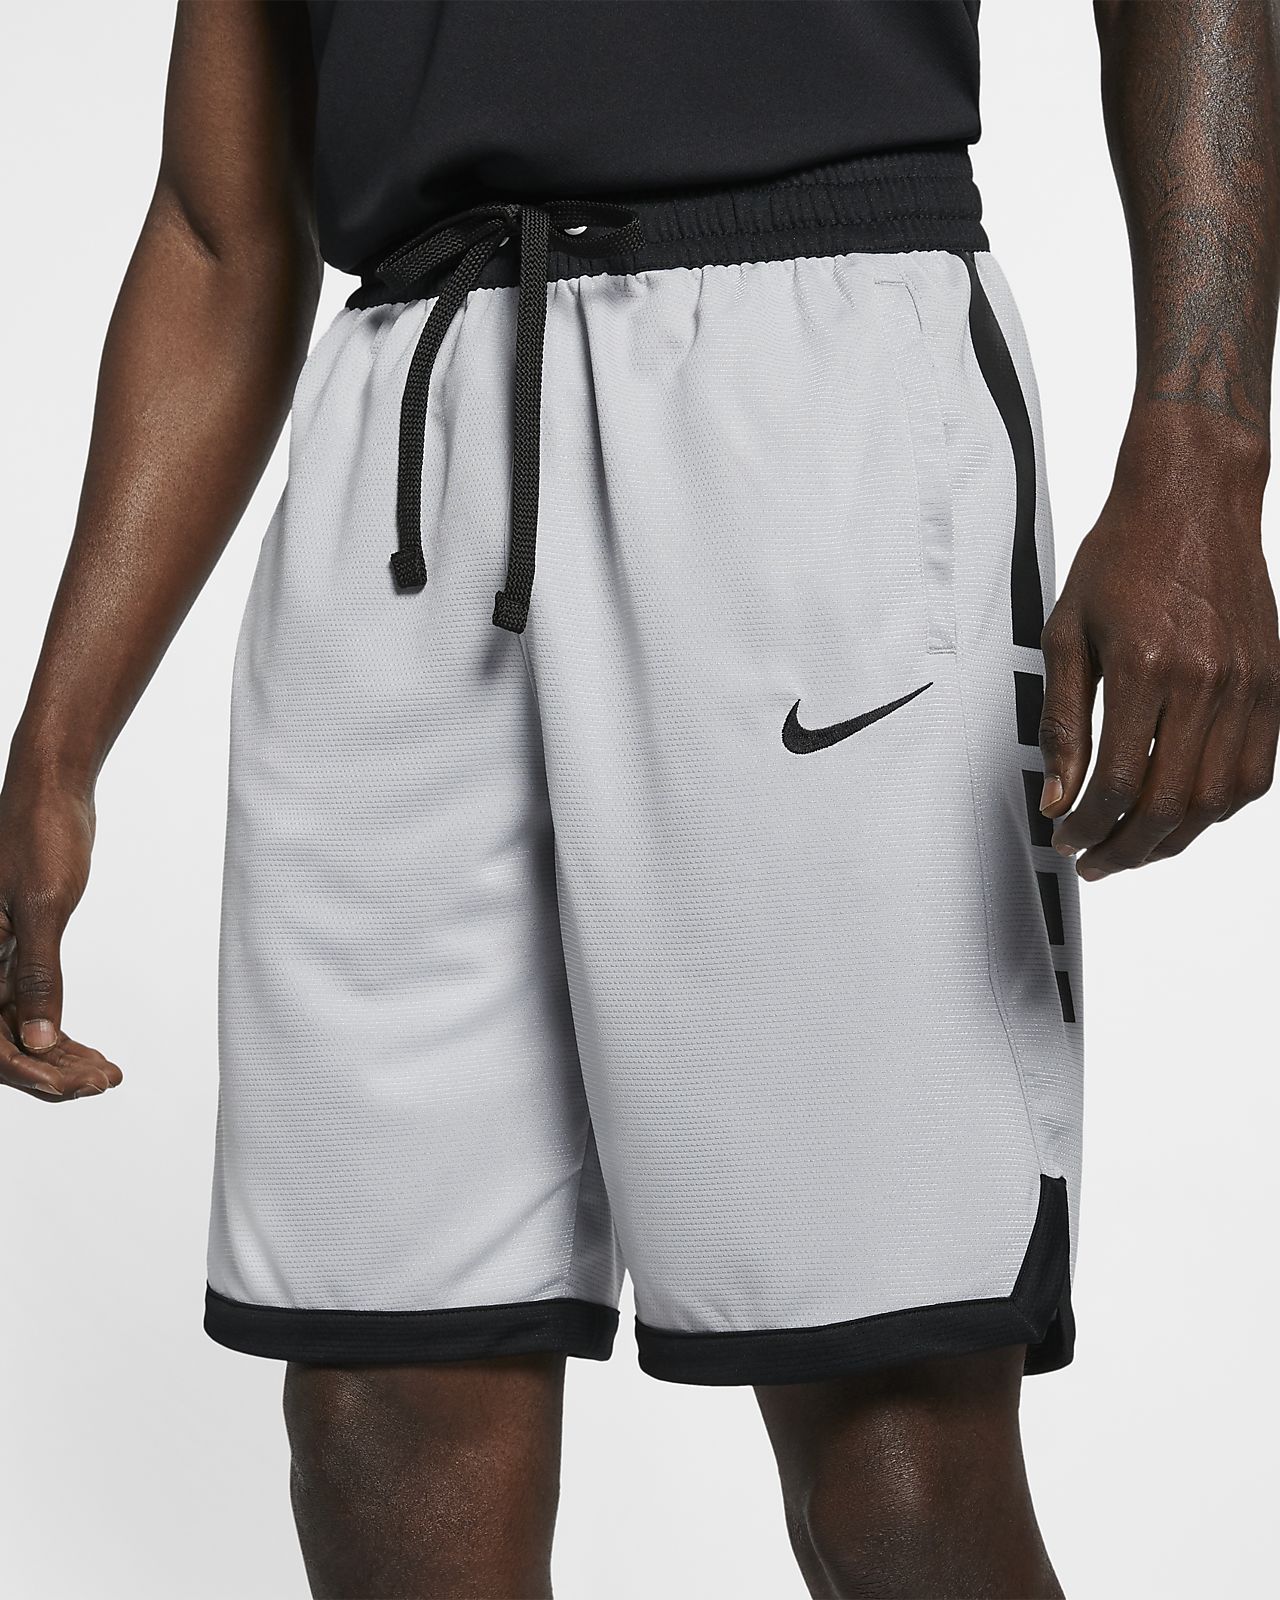 Черные шорты найк. Шорты Nike Dri Fit. Шорты Nike Dri Fit Basketball. Nike ACG Dri-Fit шорты. Шорты Nike Dri-Fit Basketball 3.0.